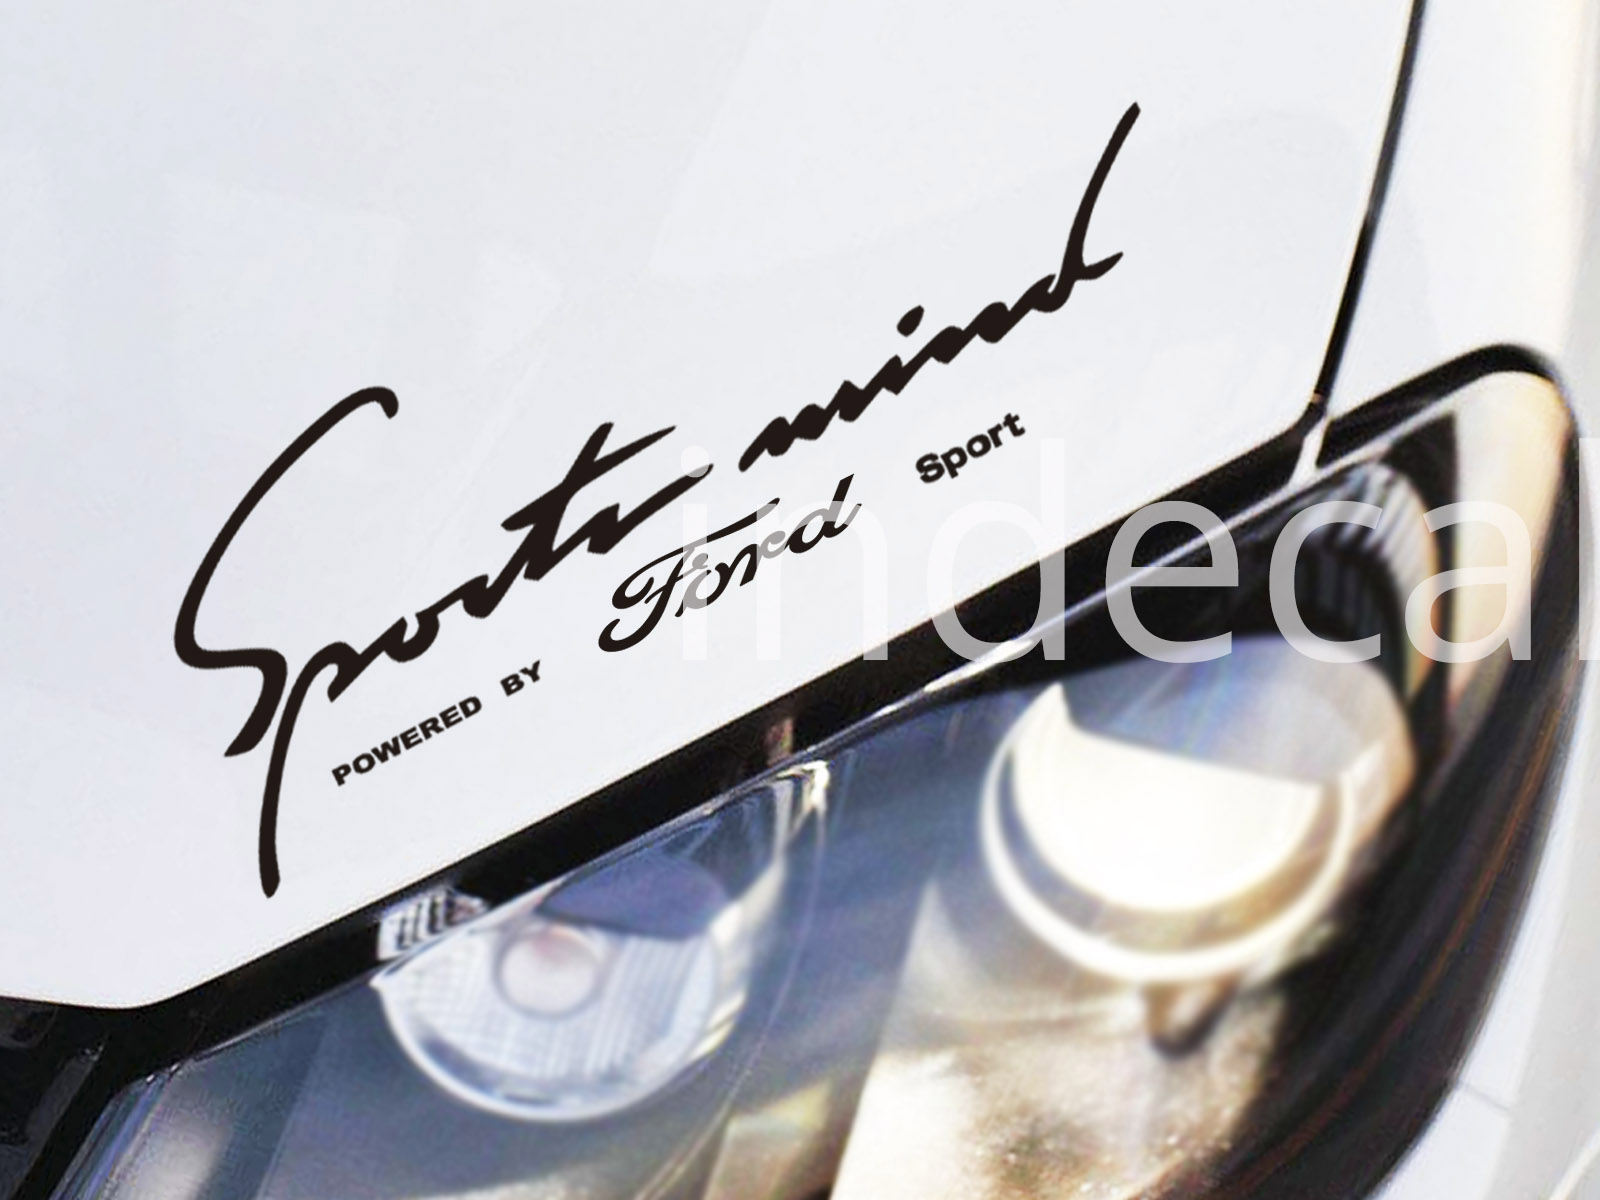 1 x Ford Sports Mind Sticker - Black